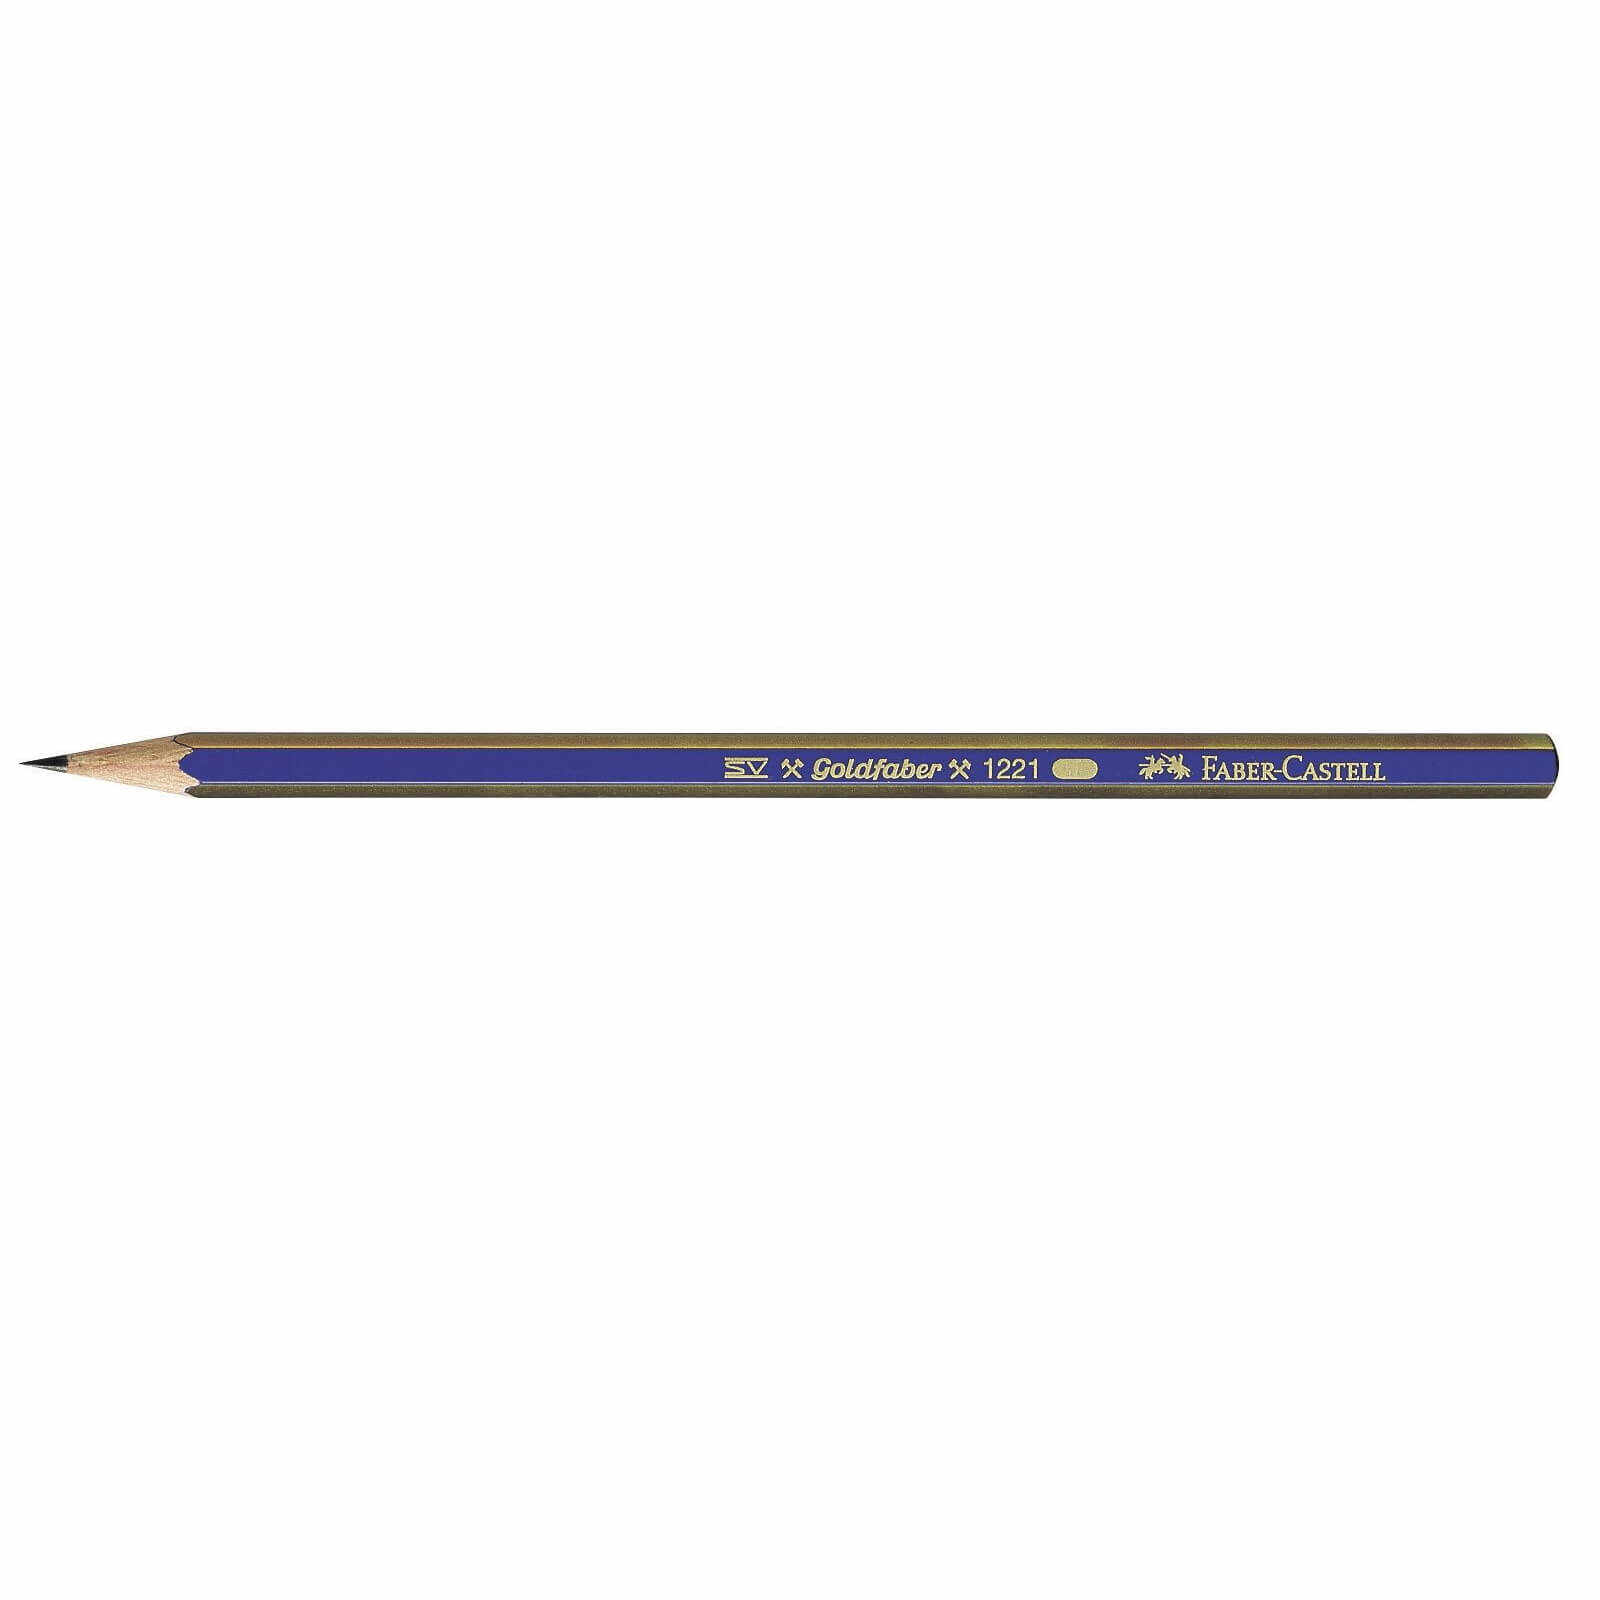 Creion grafit Goldfaber fara guma - 5B